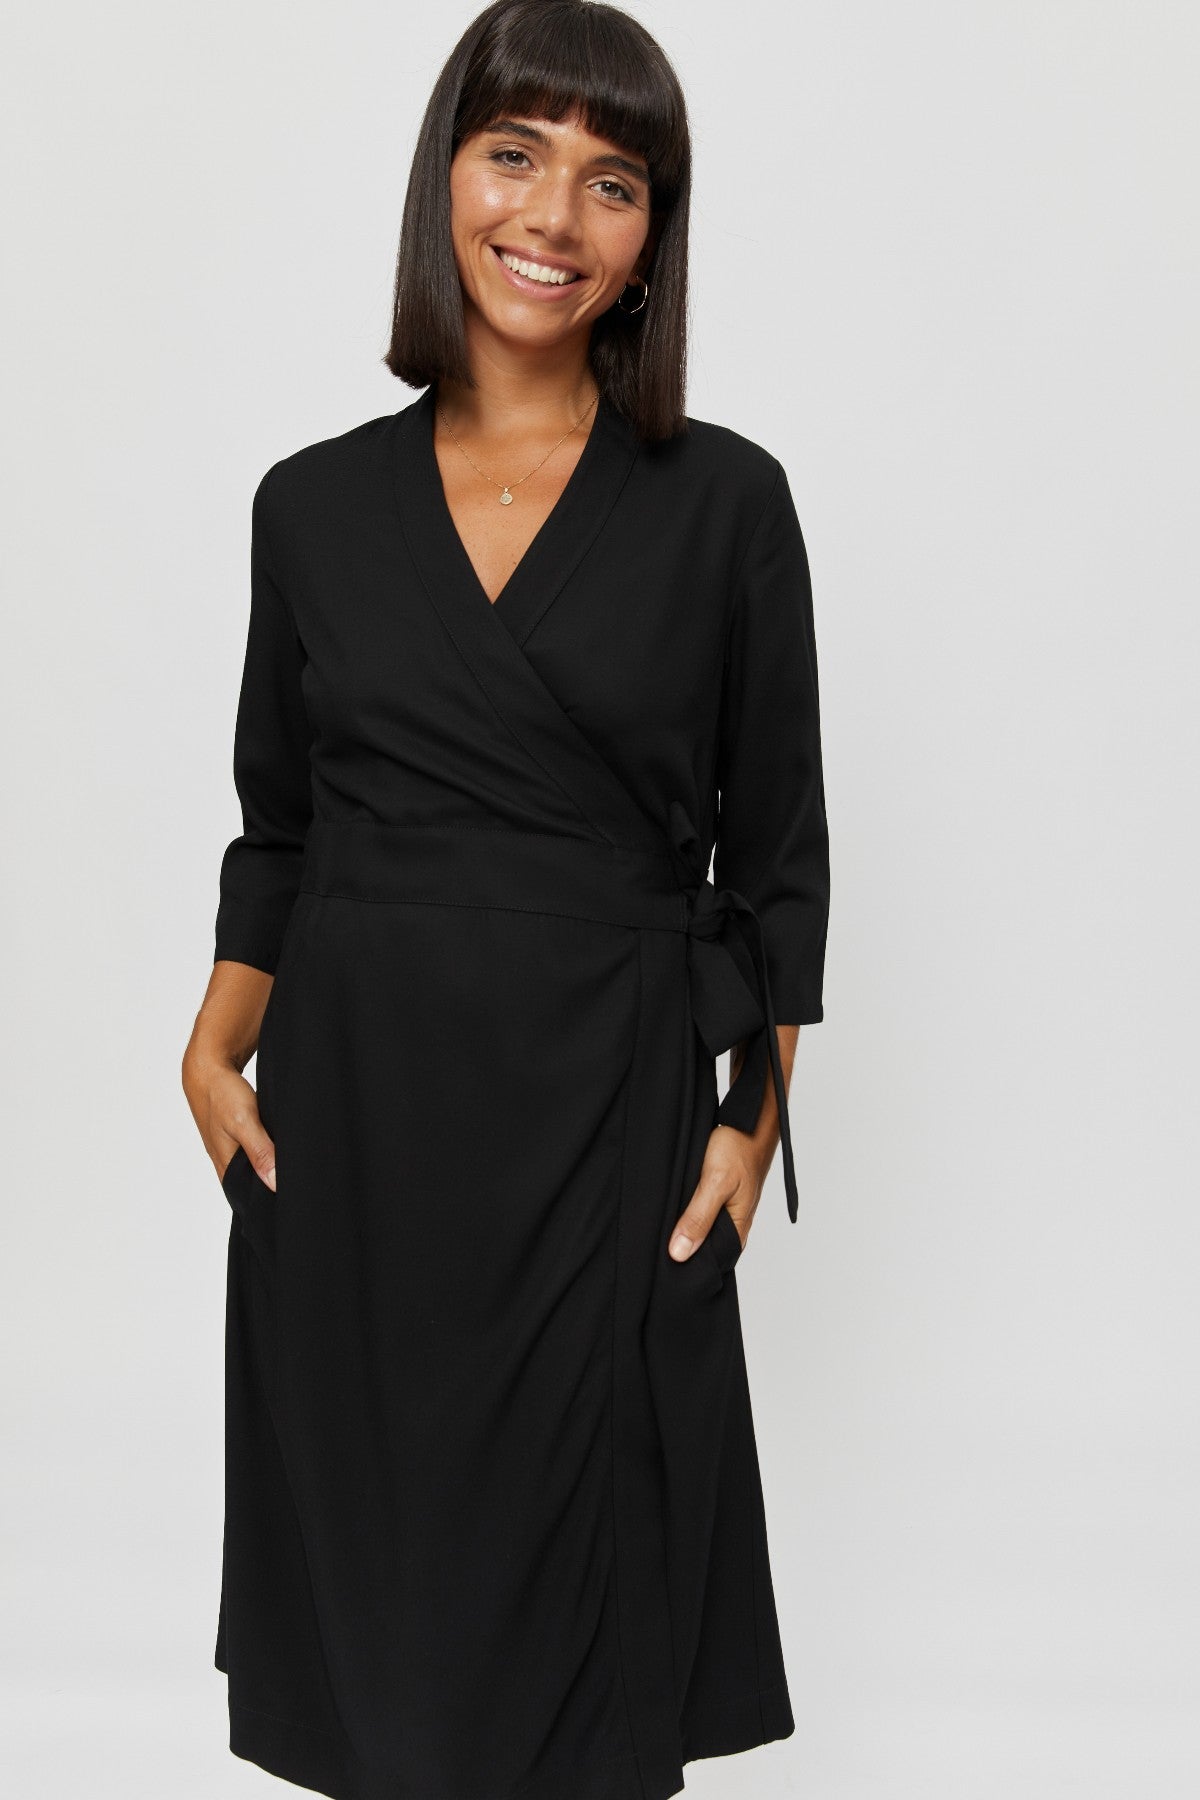 Black wrap dress Sandra made of 100% viscose by Ayani